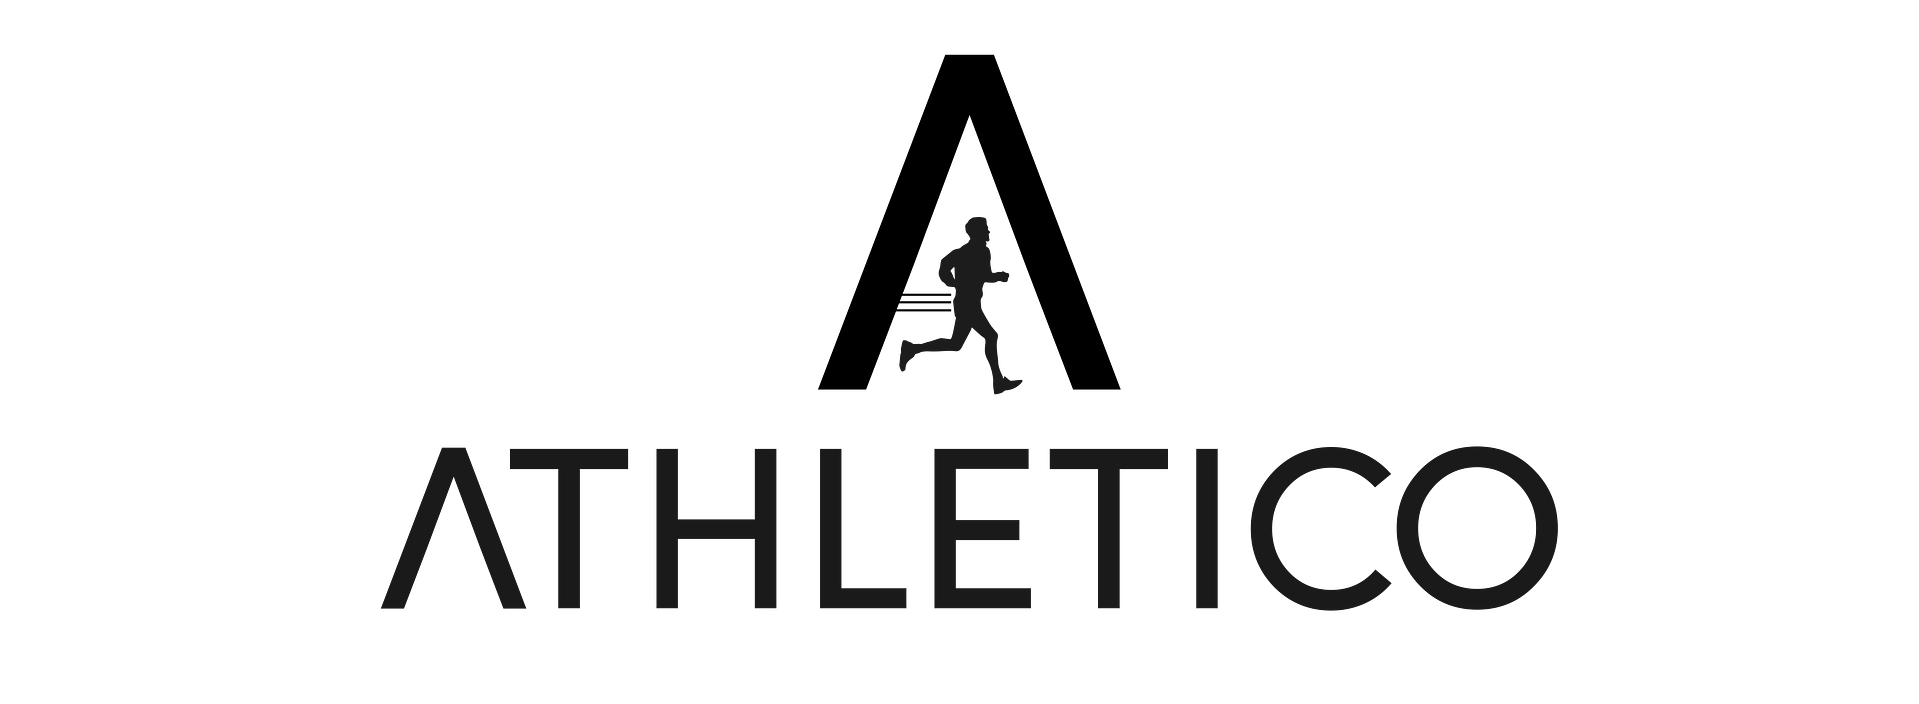 Athletico logo png